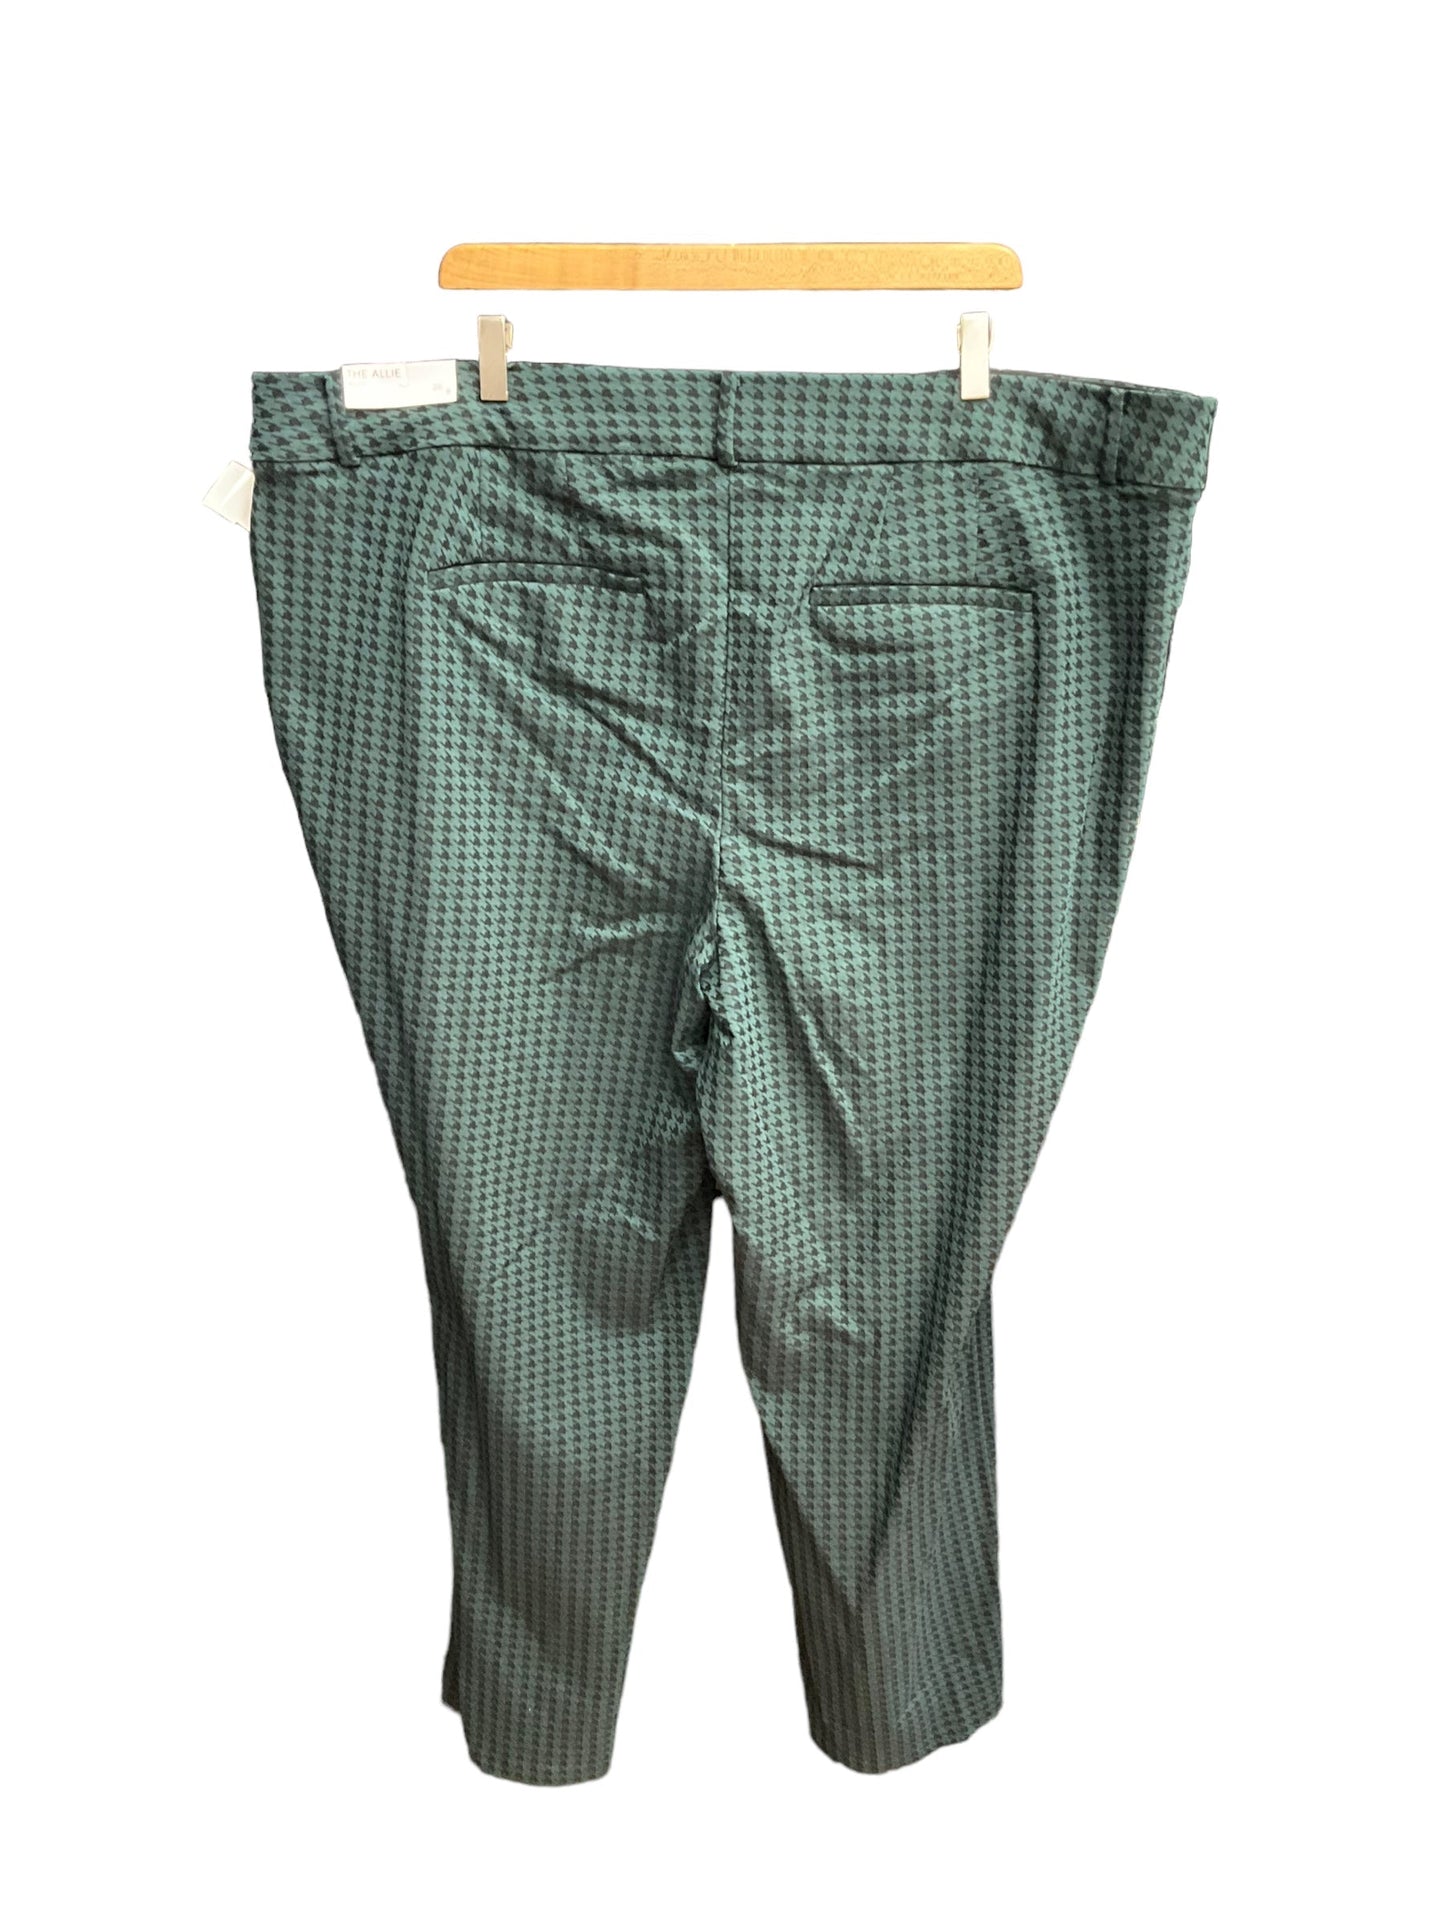 Black & Green Pants Dress Lane Bryant, Size 26